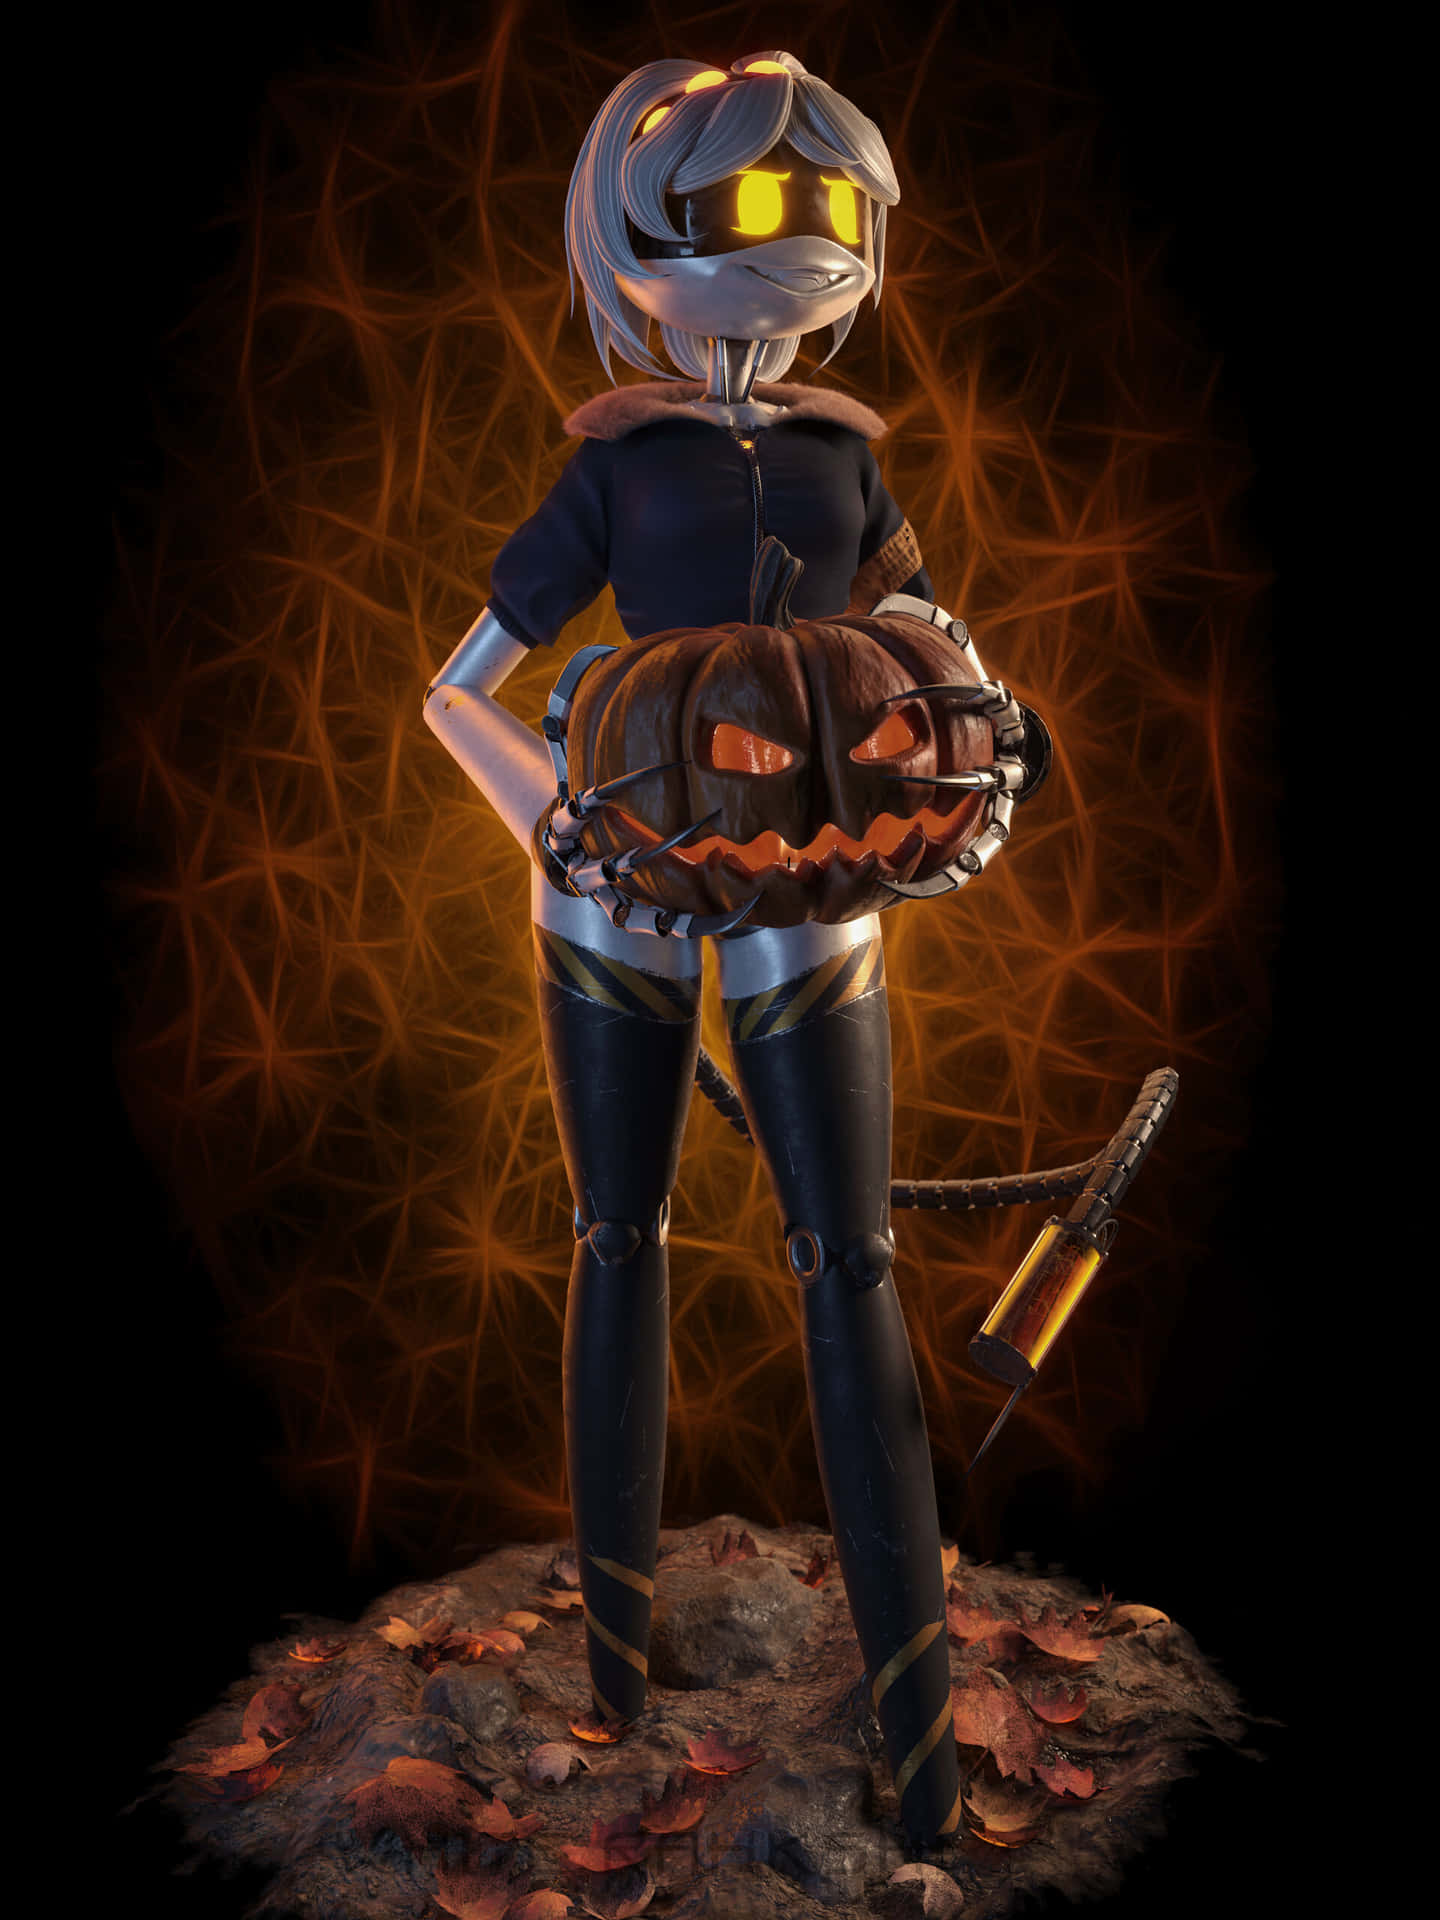 Halloween Themed Robot With Pumpkin Basket Wallpaper